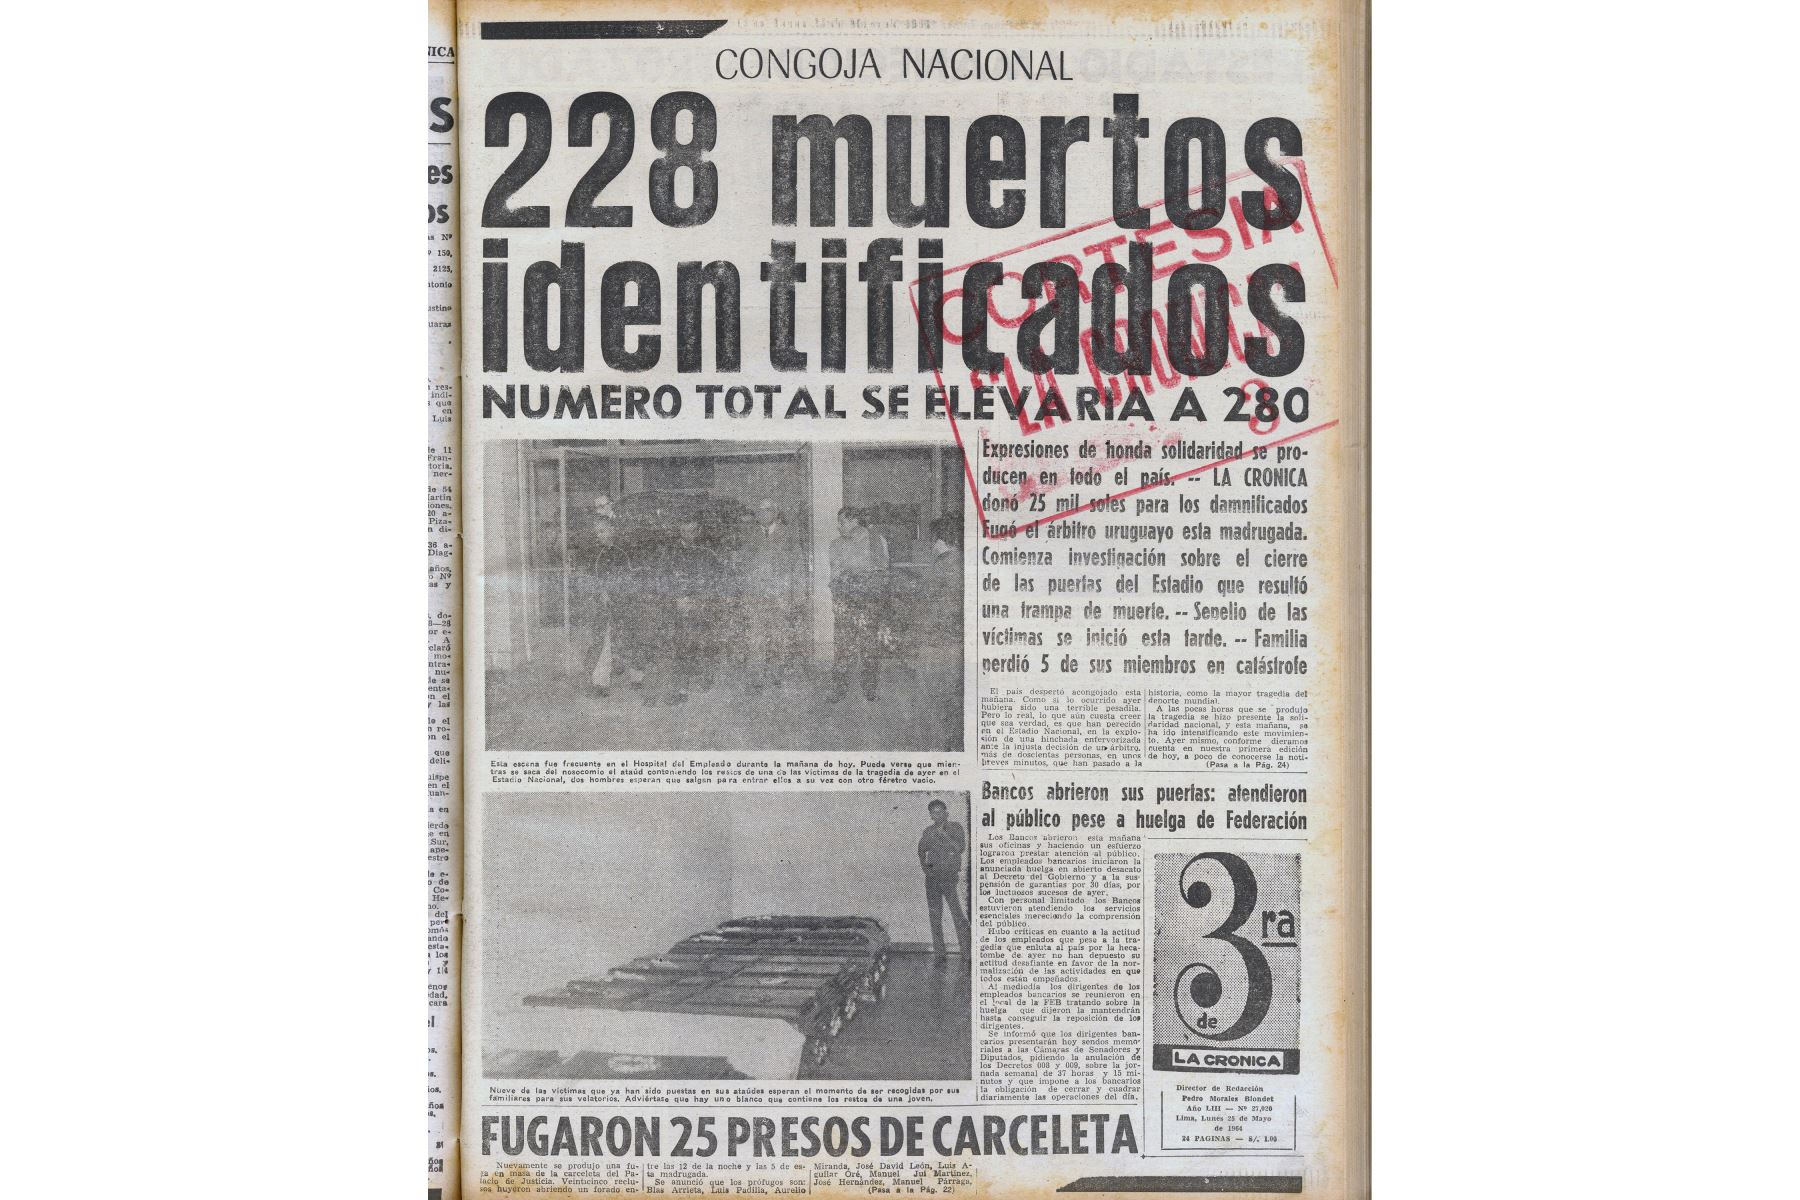 Portada de La Tercera edición del diario La Crónica del 26 de mayo de 1964 que informa sobre la tragedia del Estadio Nacional.